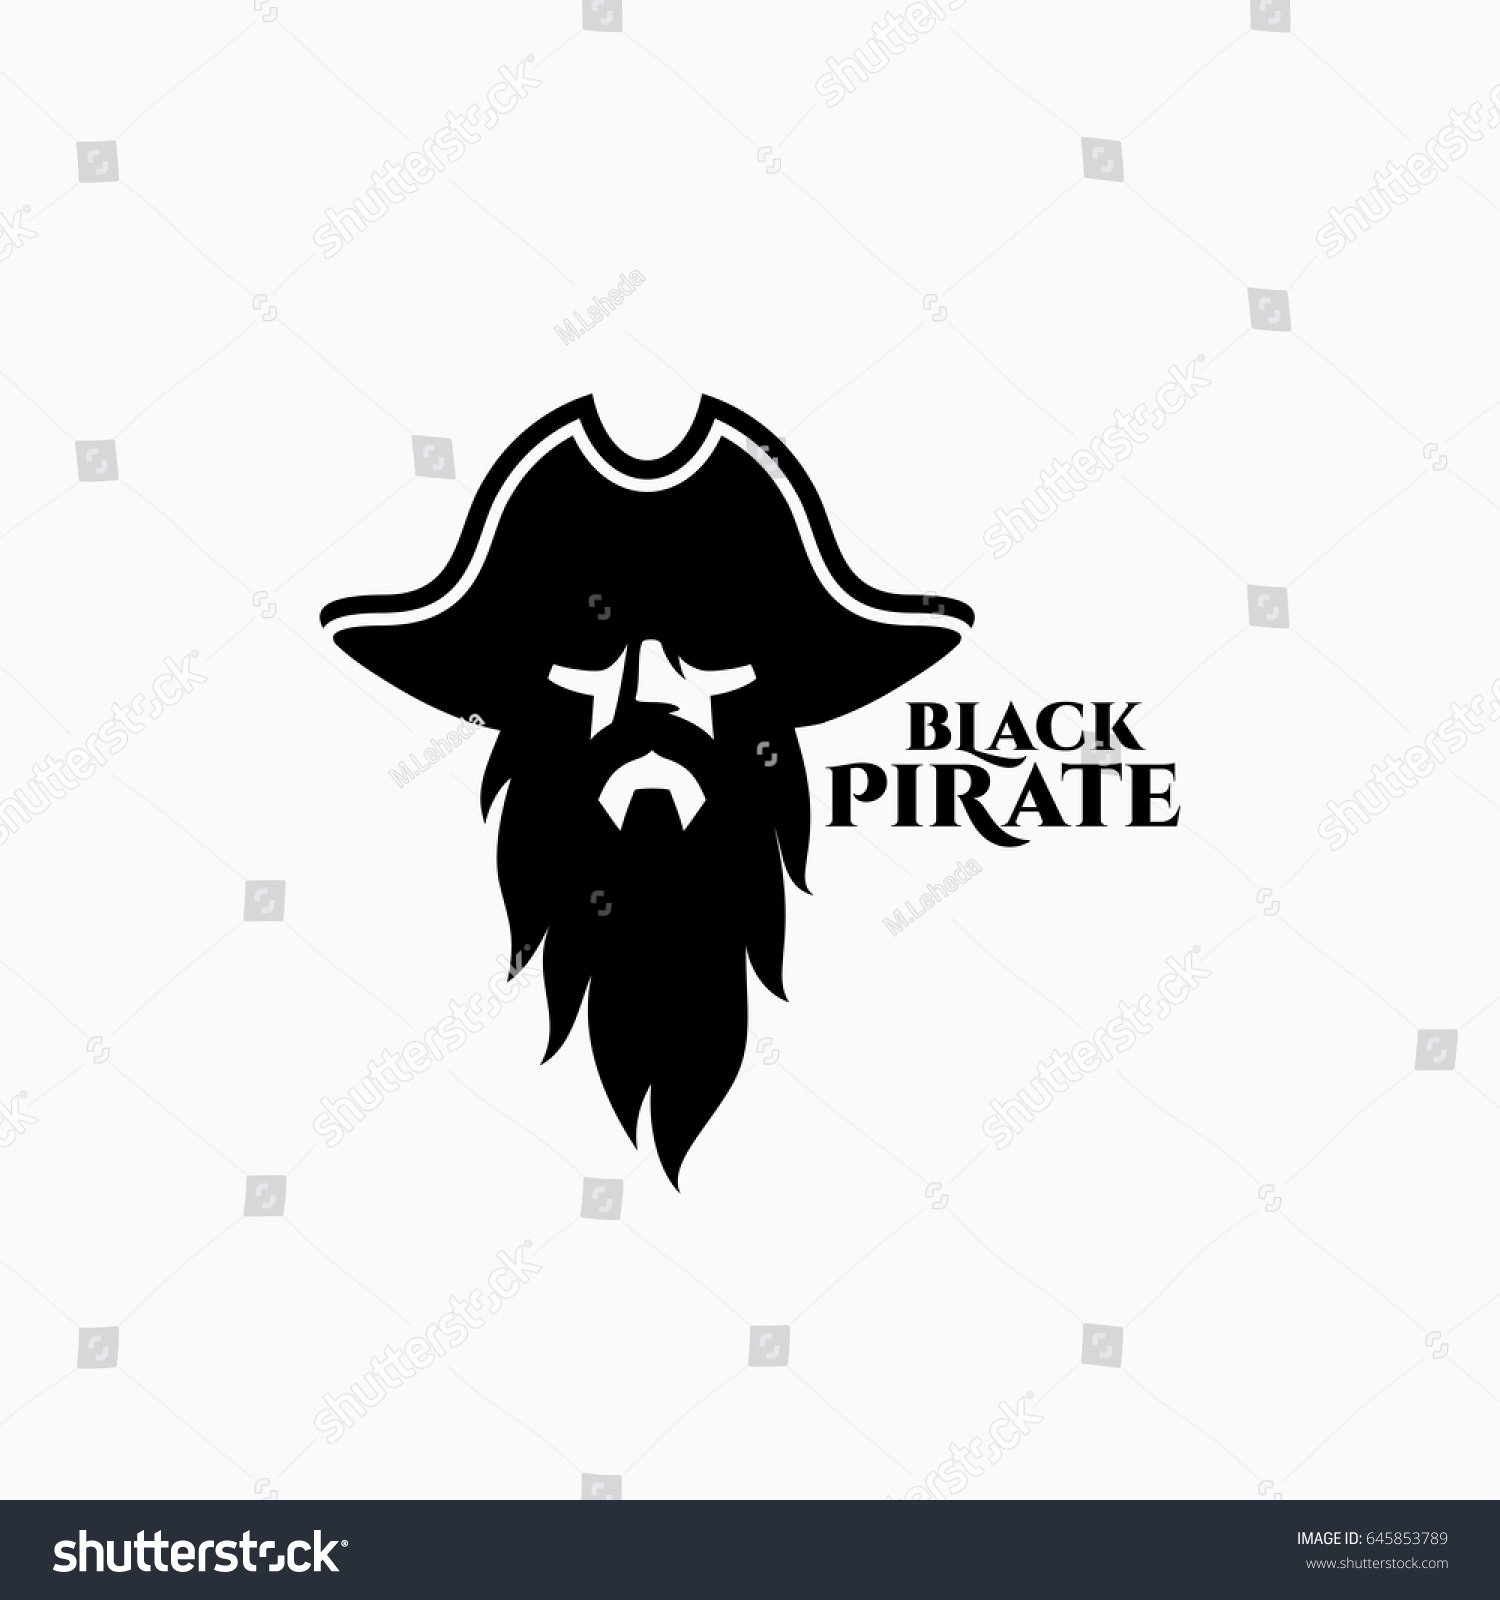 SVG of Black pirate logo template design. Vector illustration. svg